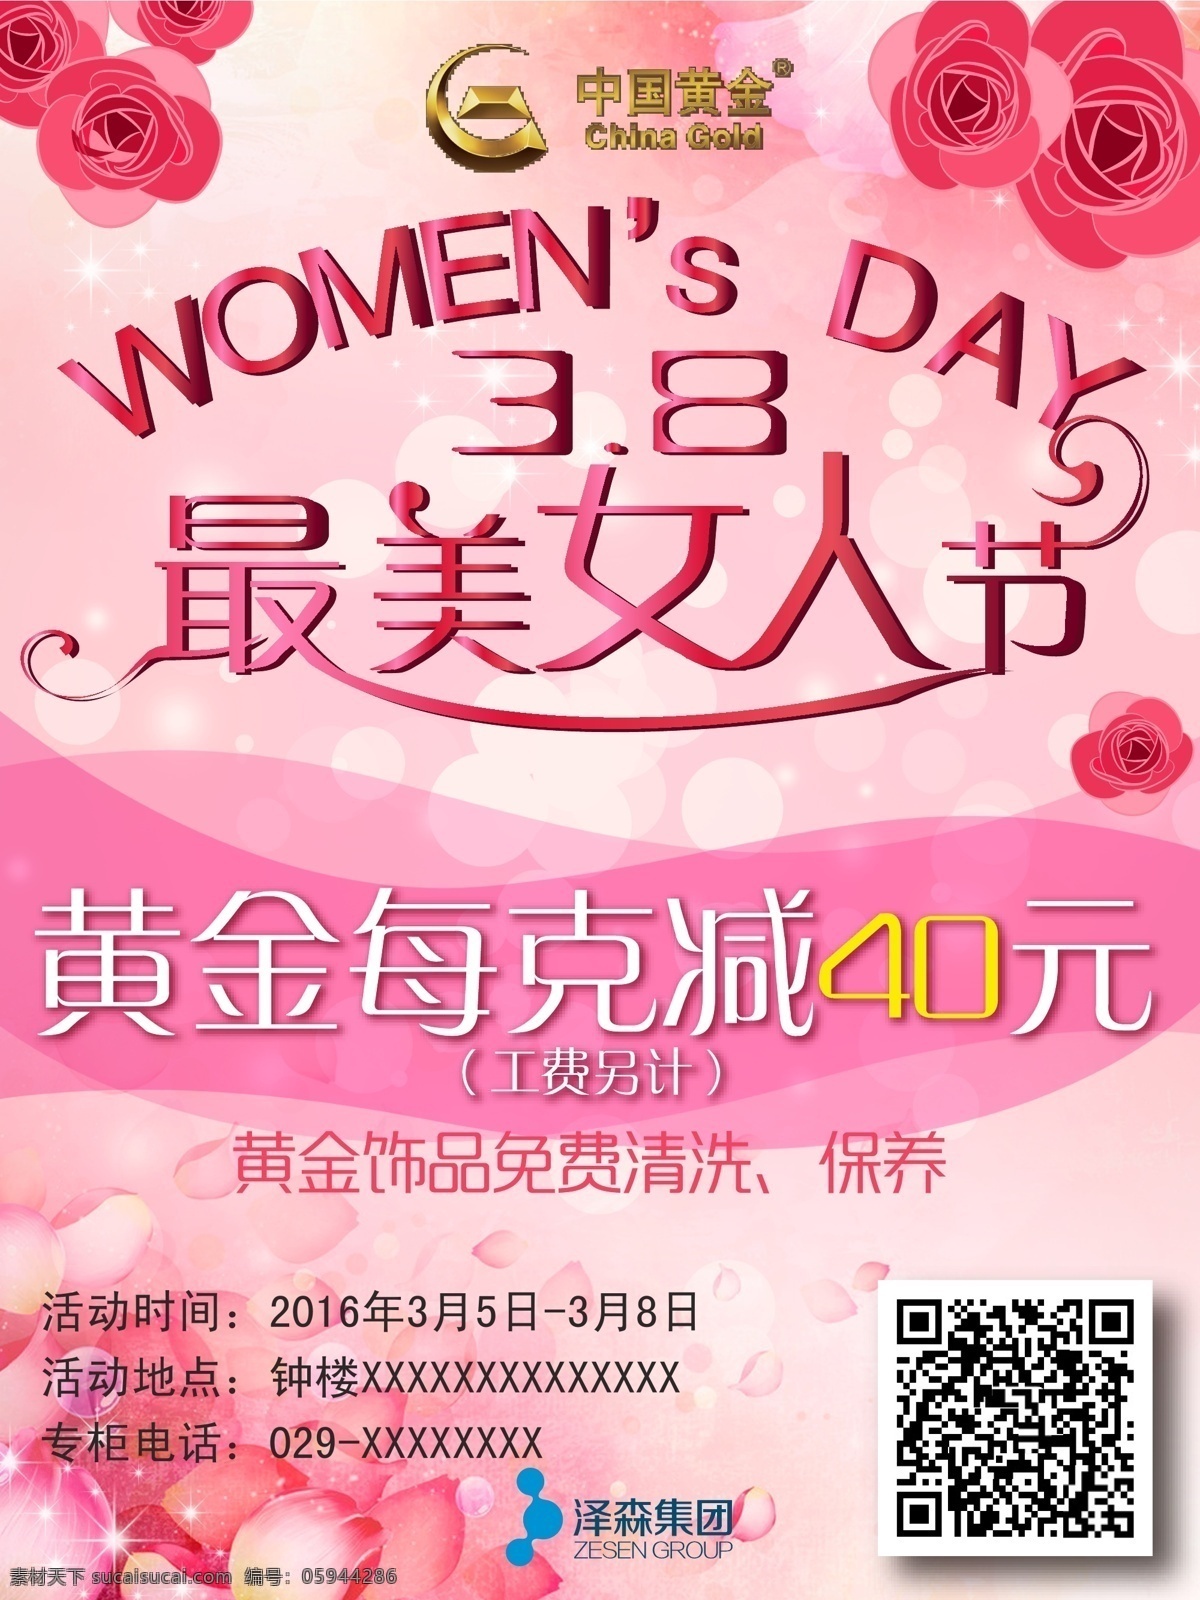 中金 妇女节 活动 中国黄金 3.8 女人节 粉色